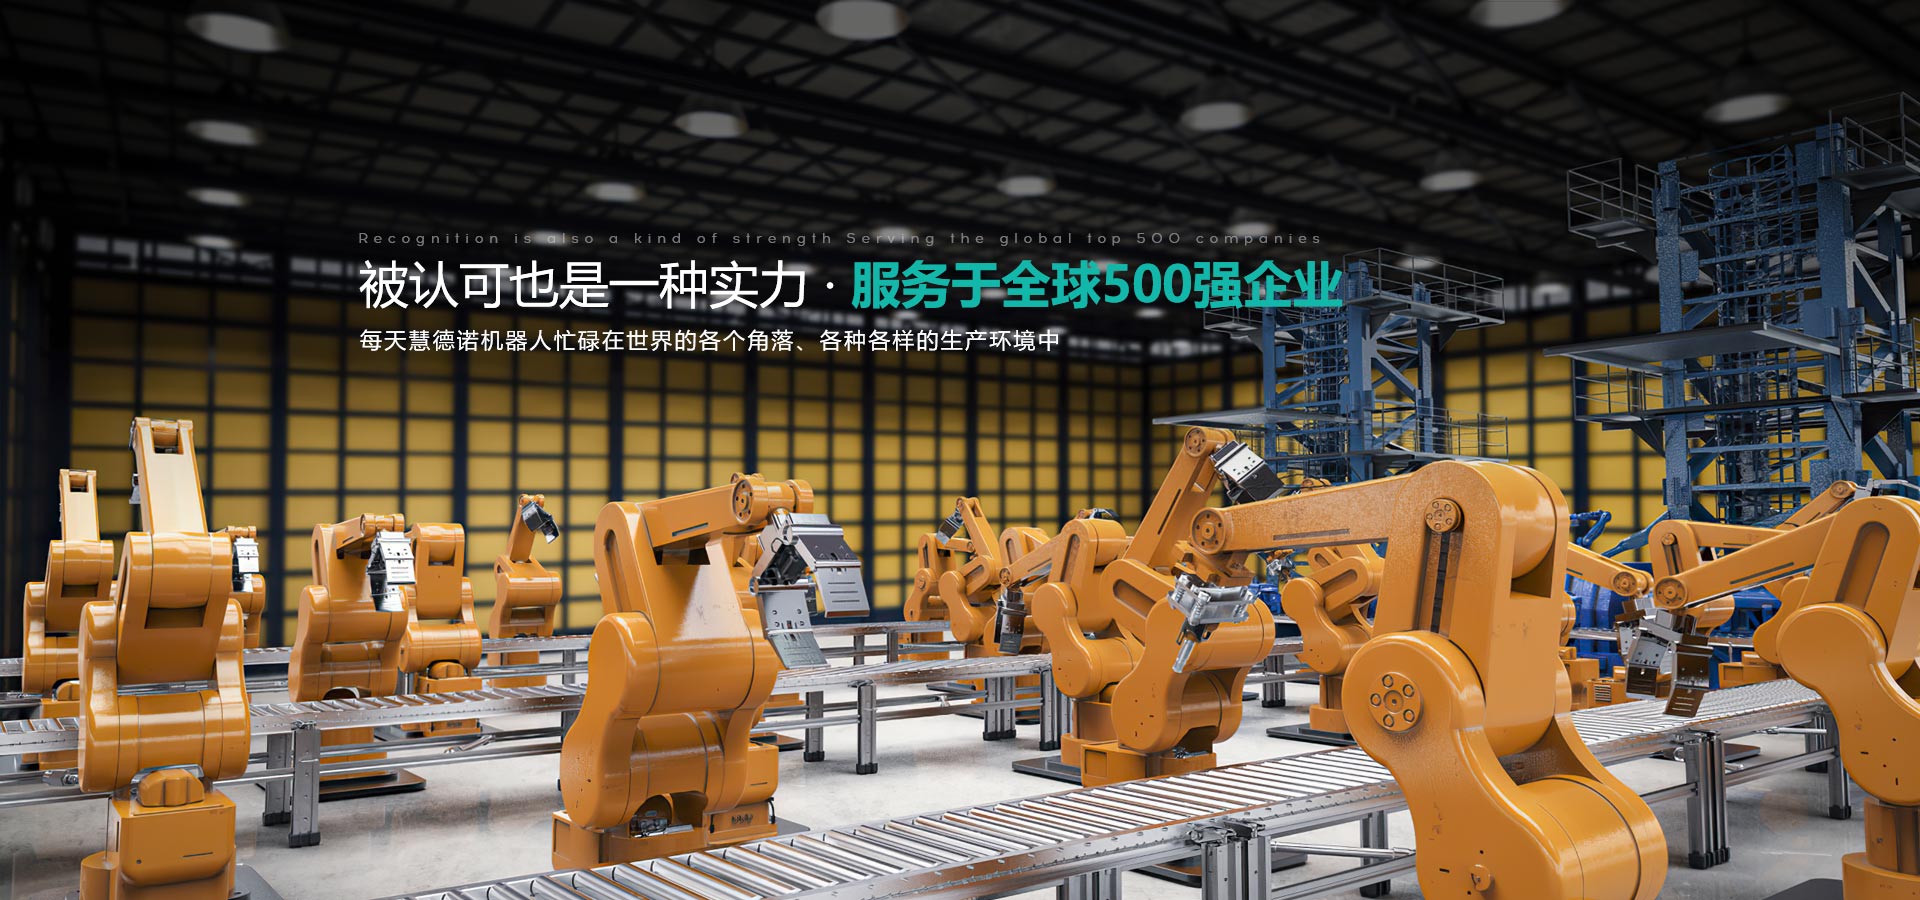 专注大型工厂自动化生产线安全码垛机器人深圳慧德诺码垛机械手厂家